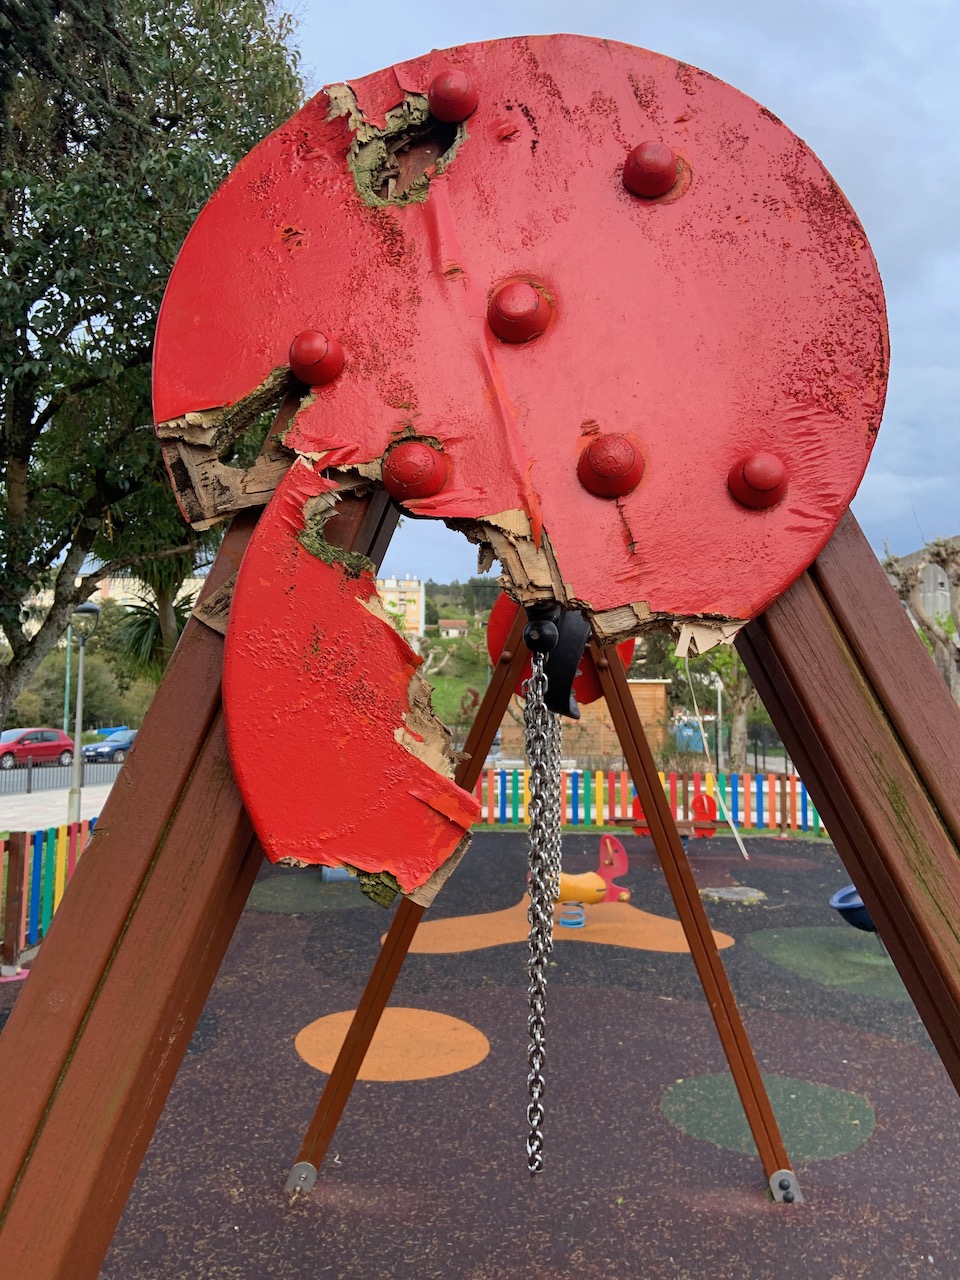 El PP pide el cierre cautelar del parque infantil de A Ribeira por riesgo de accidente